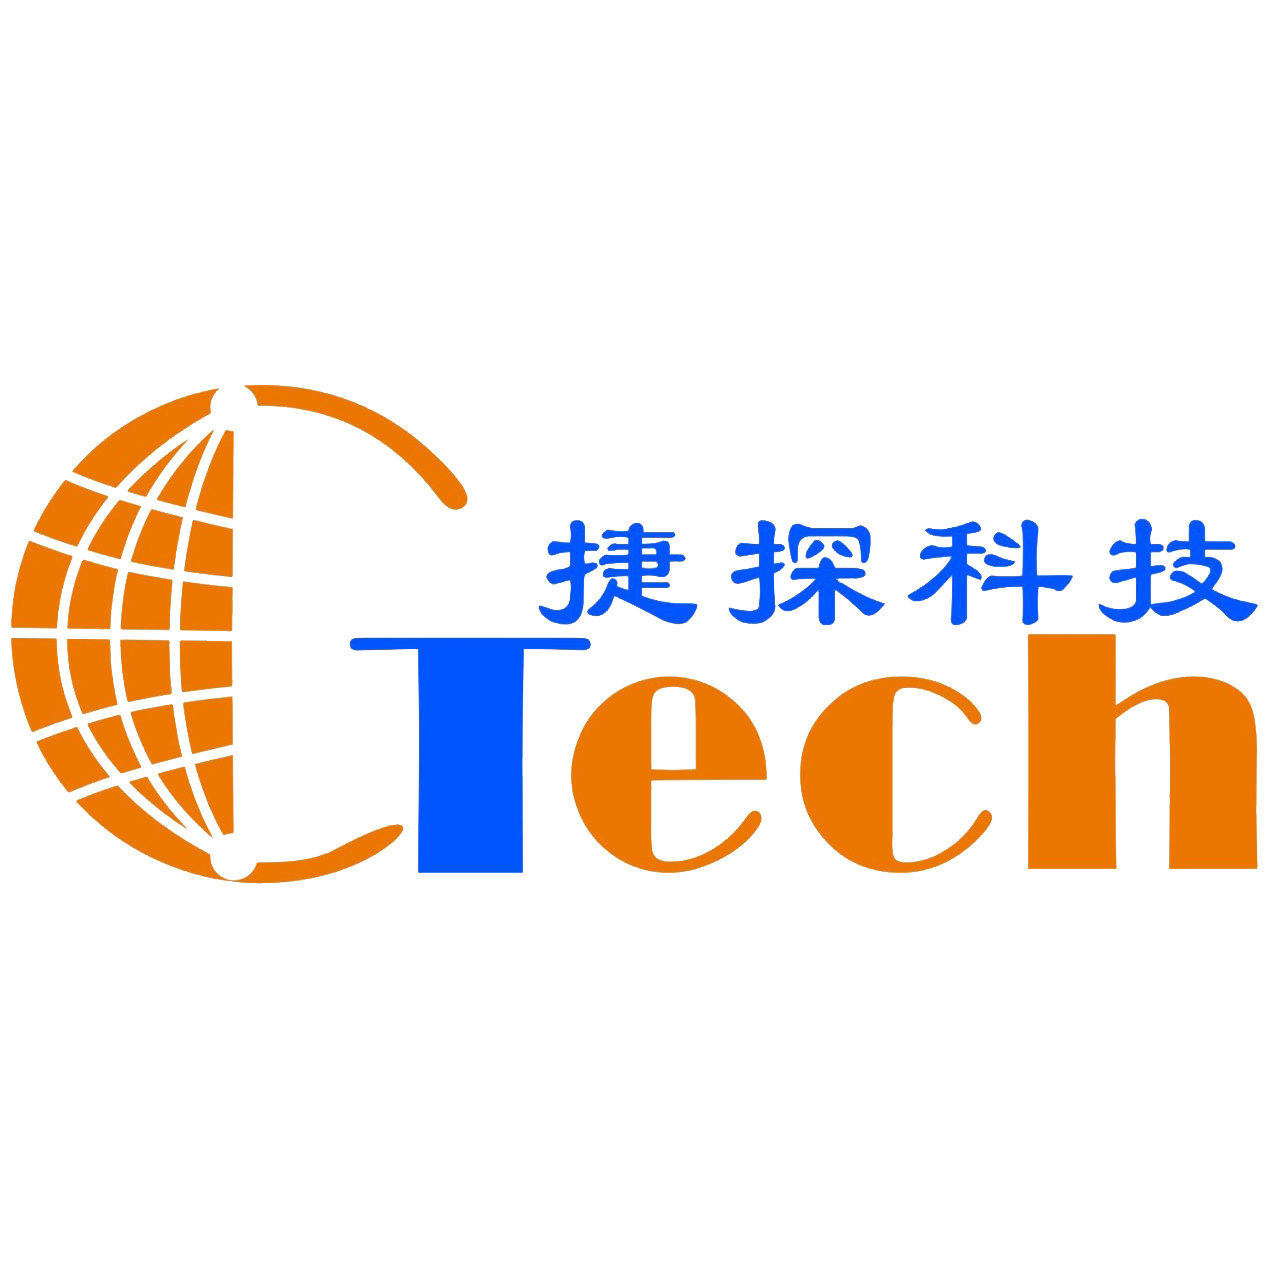 武汉捷探科技有限公司